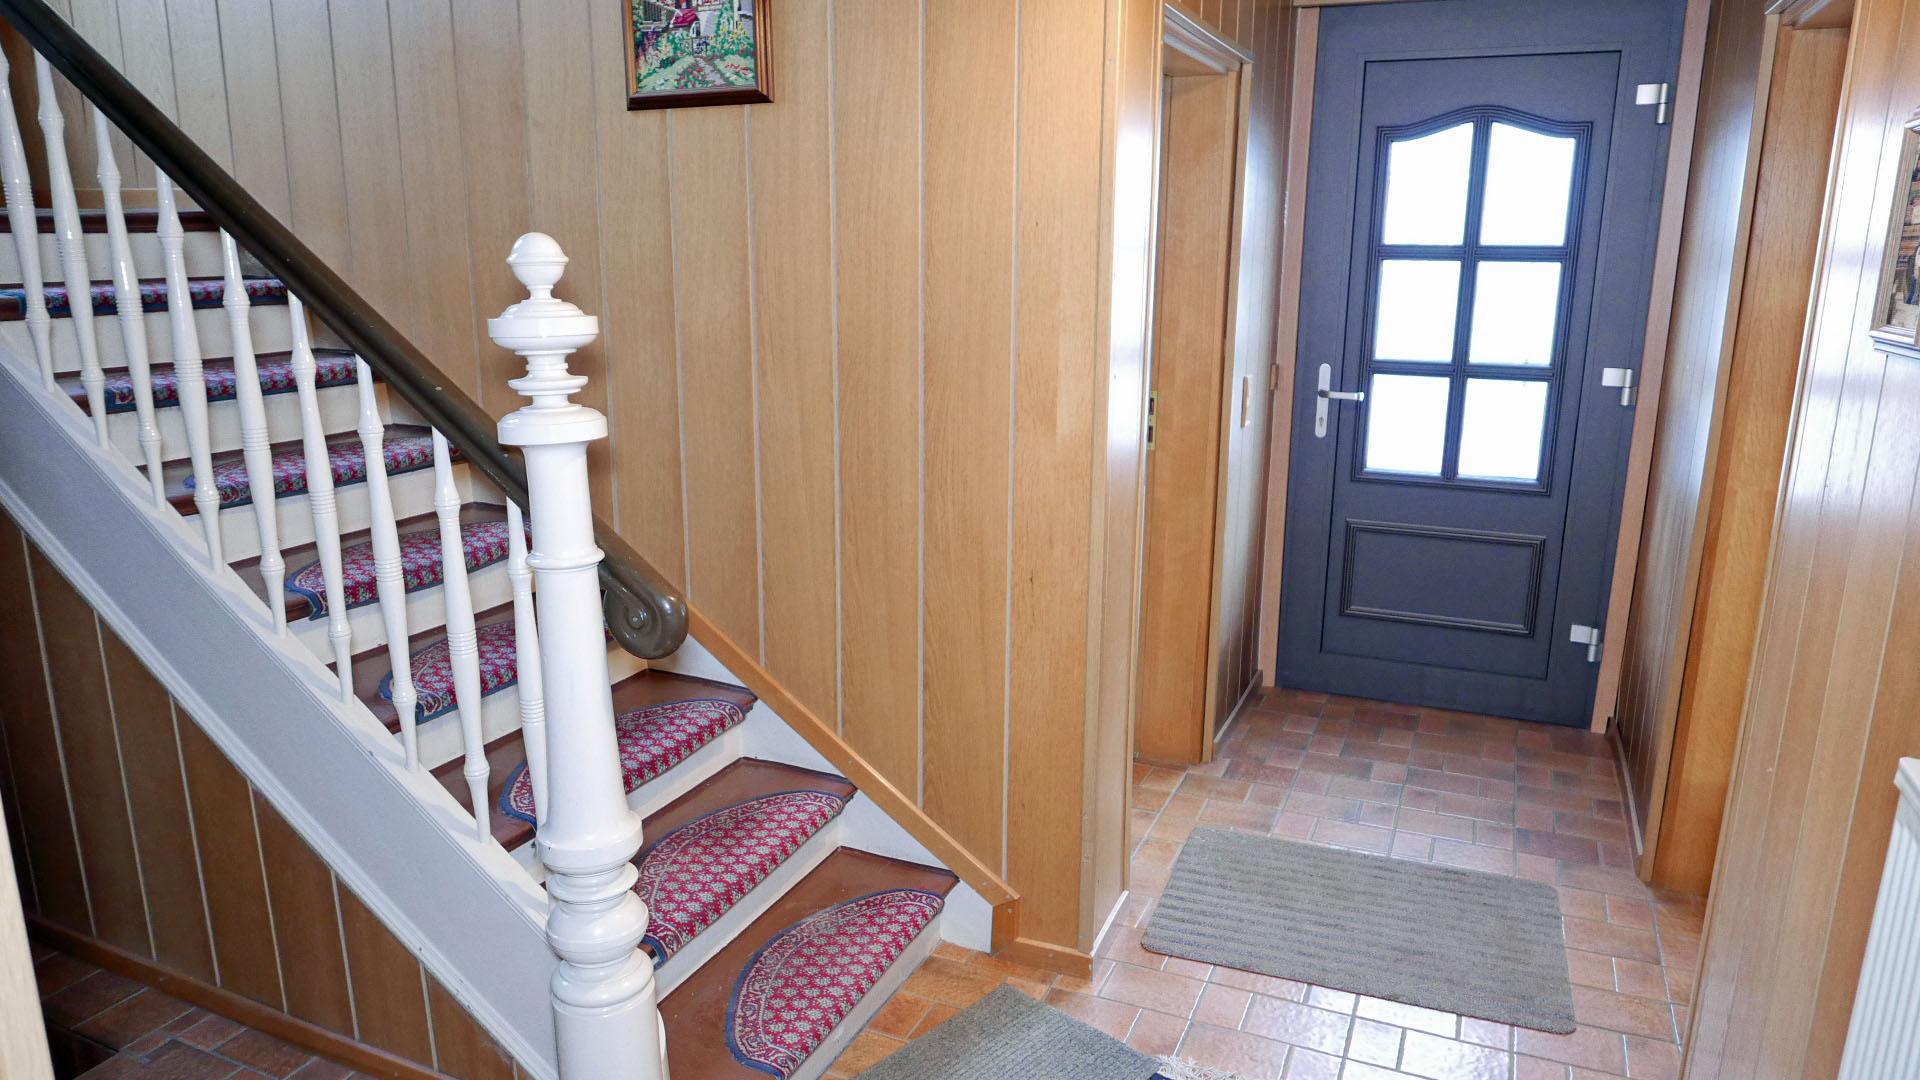 Morsbach: Alles fußläufig erreichbar. Großes, charmantes 1-2-Familienhaus, Blick in den Eingangsbereich mit herrlicher Treppe